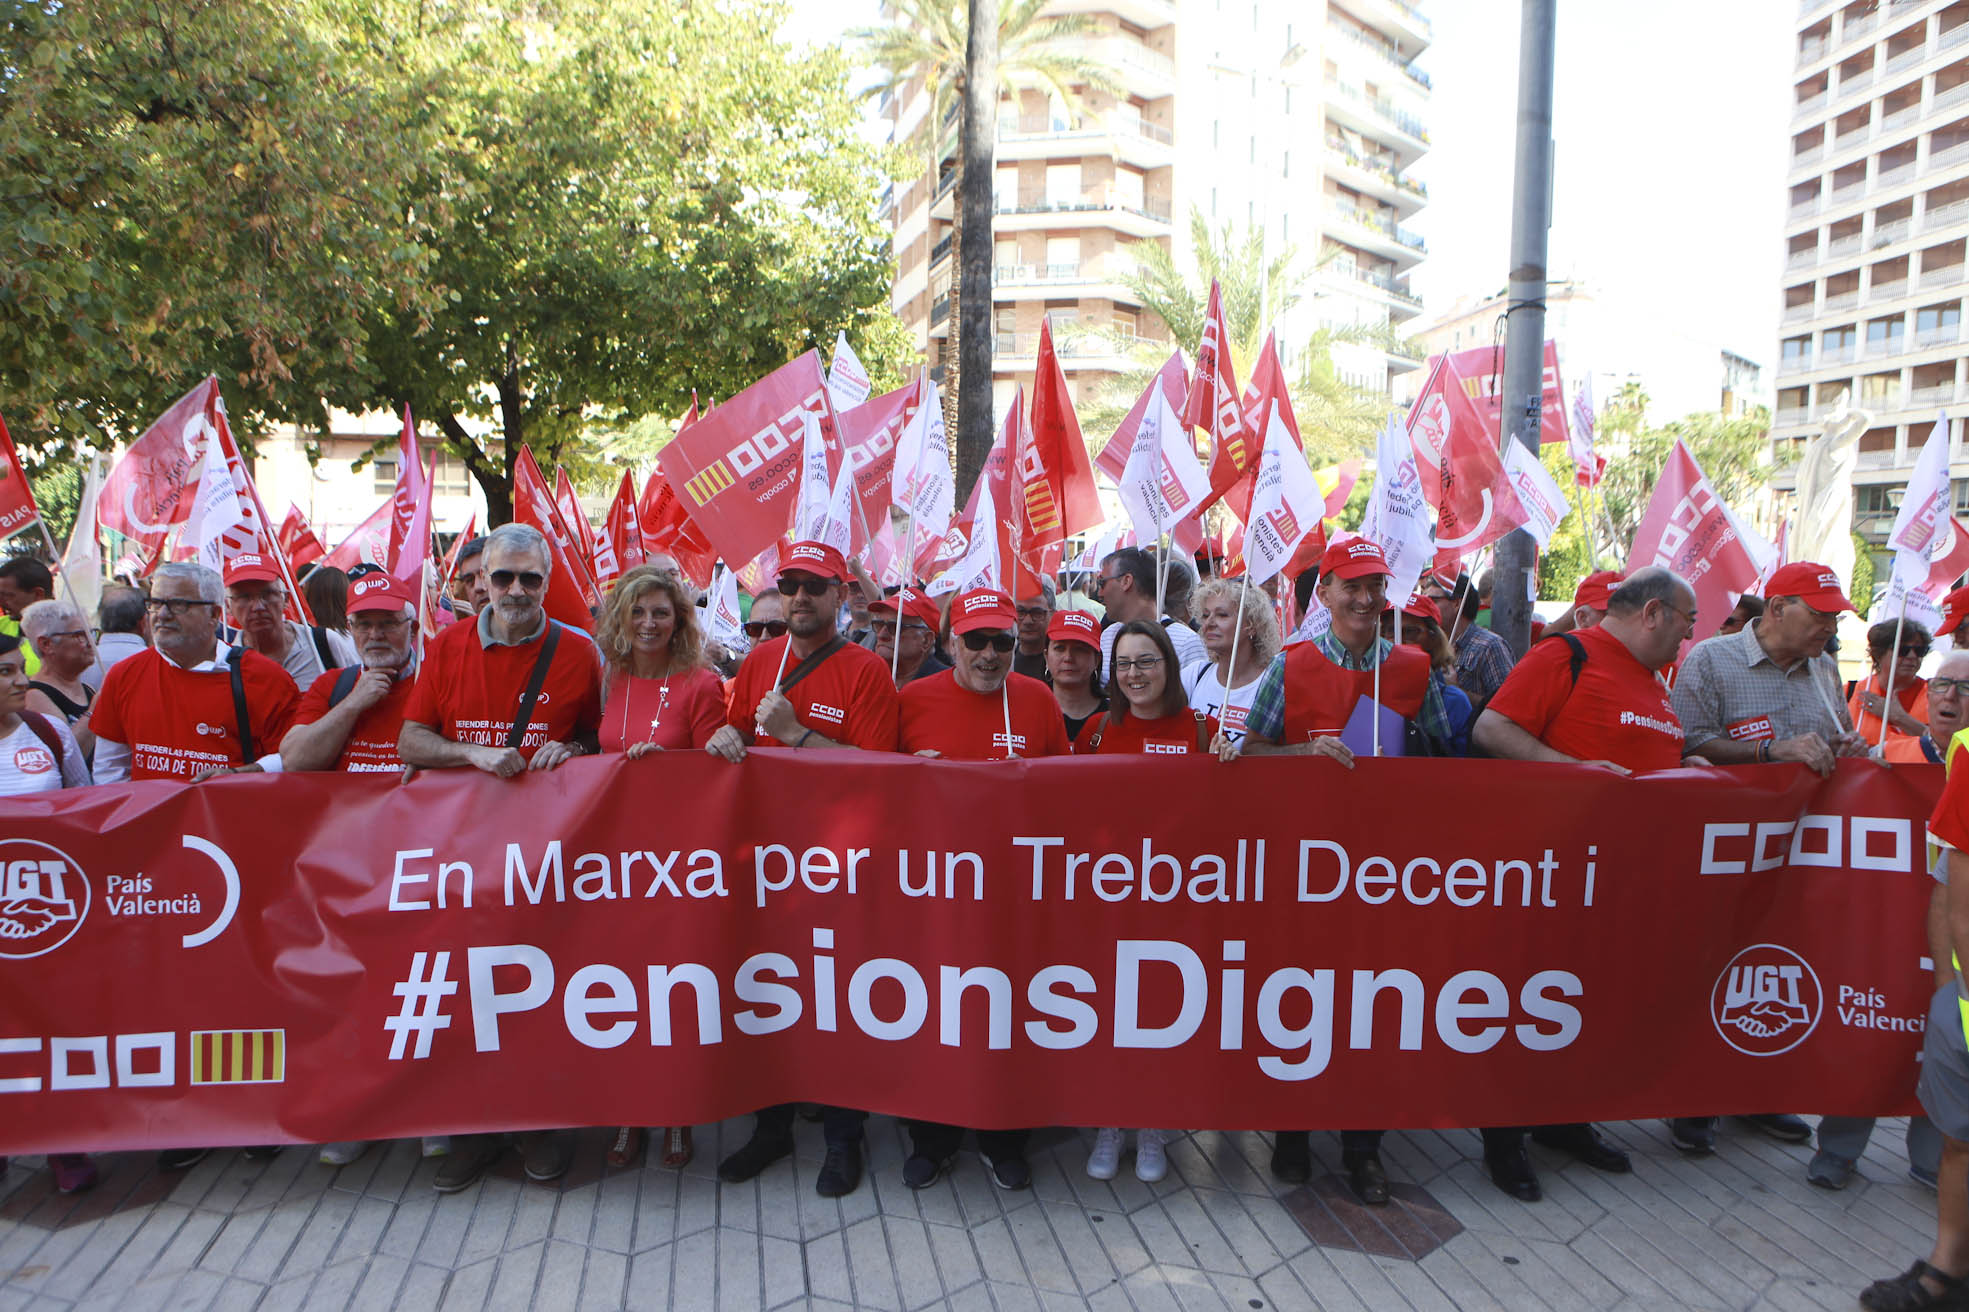 171002 marcha pensiones dignas (6).jpg